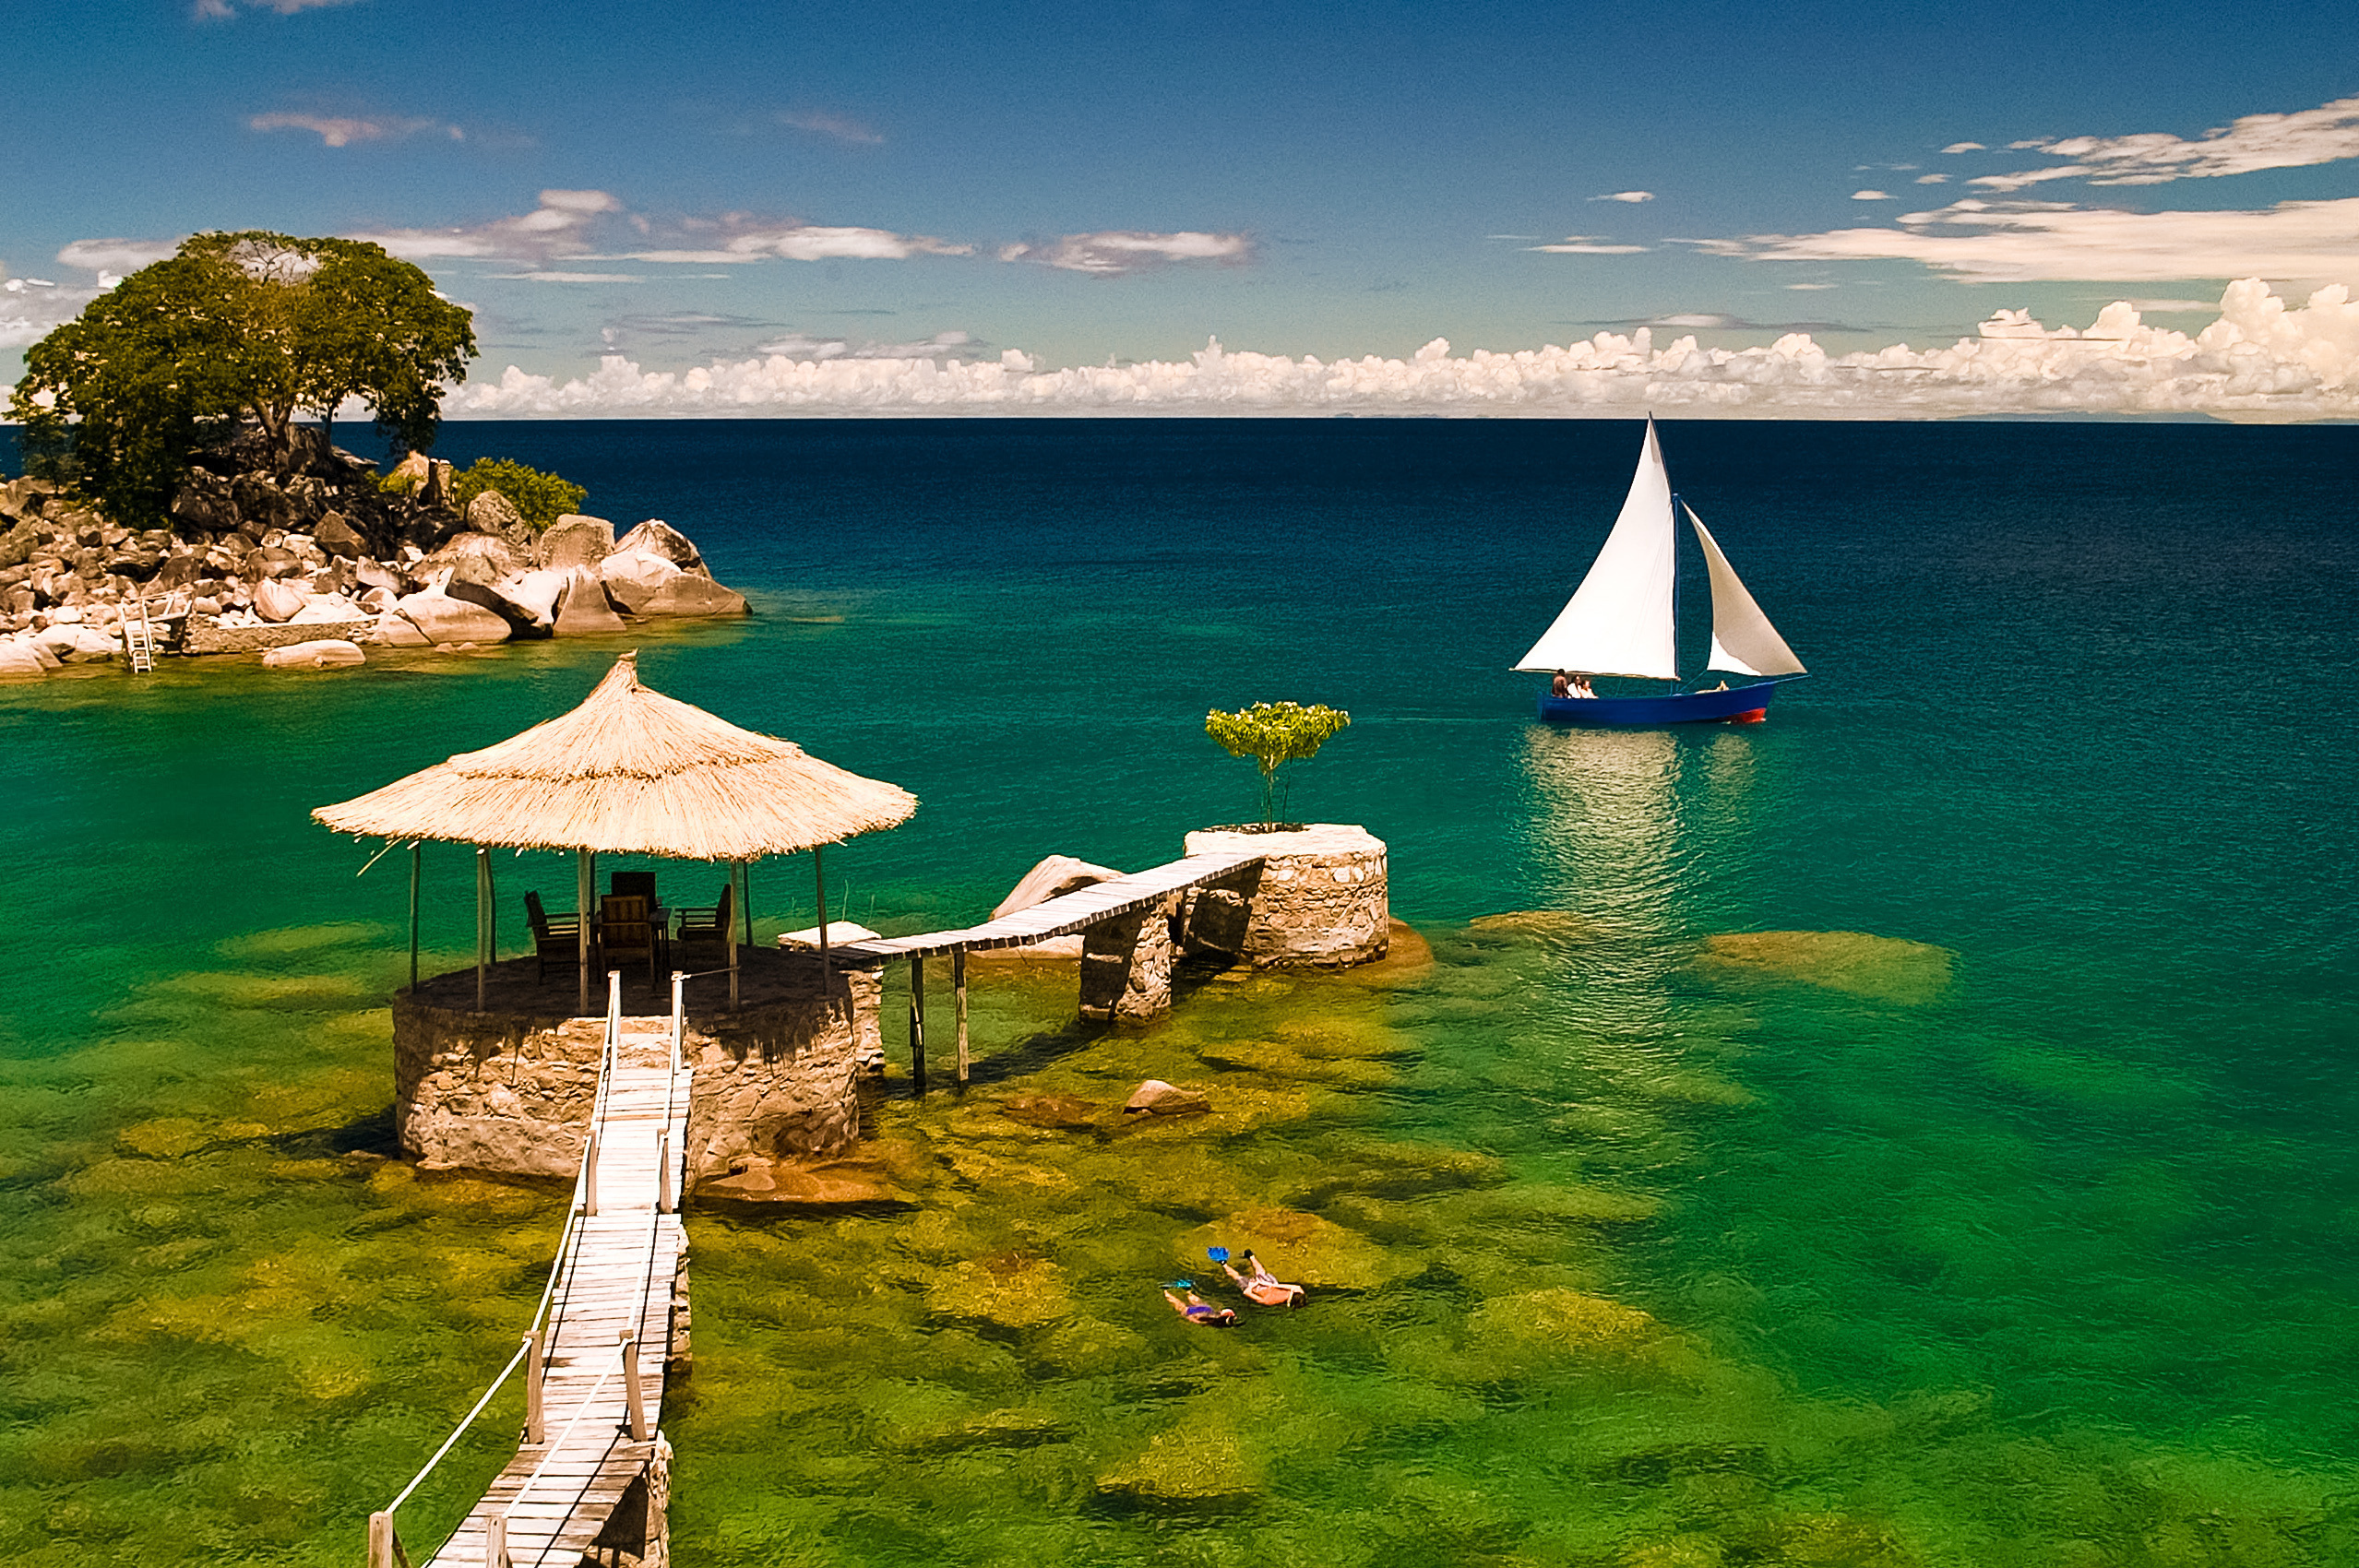 Mozambique beauty, Nature's paradise, Stunning landscapes, Tropical haven, 2560x1700 HD Desktop